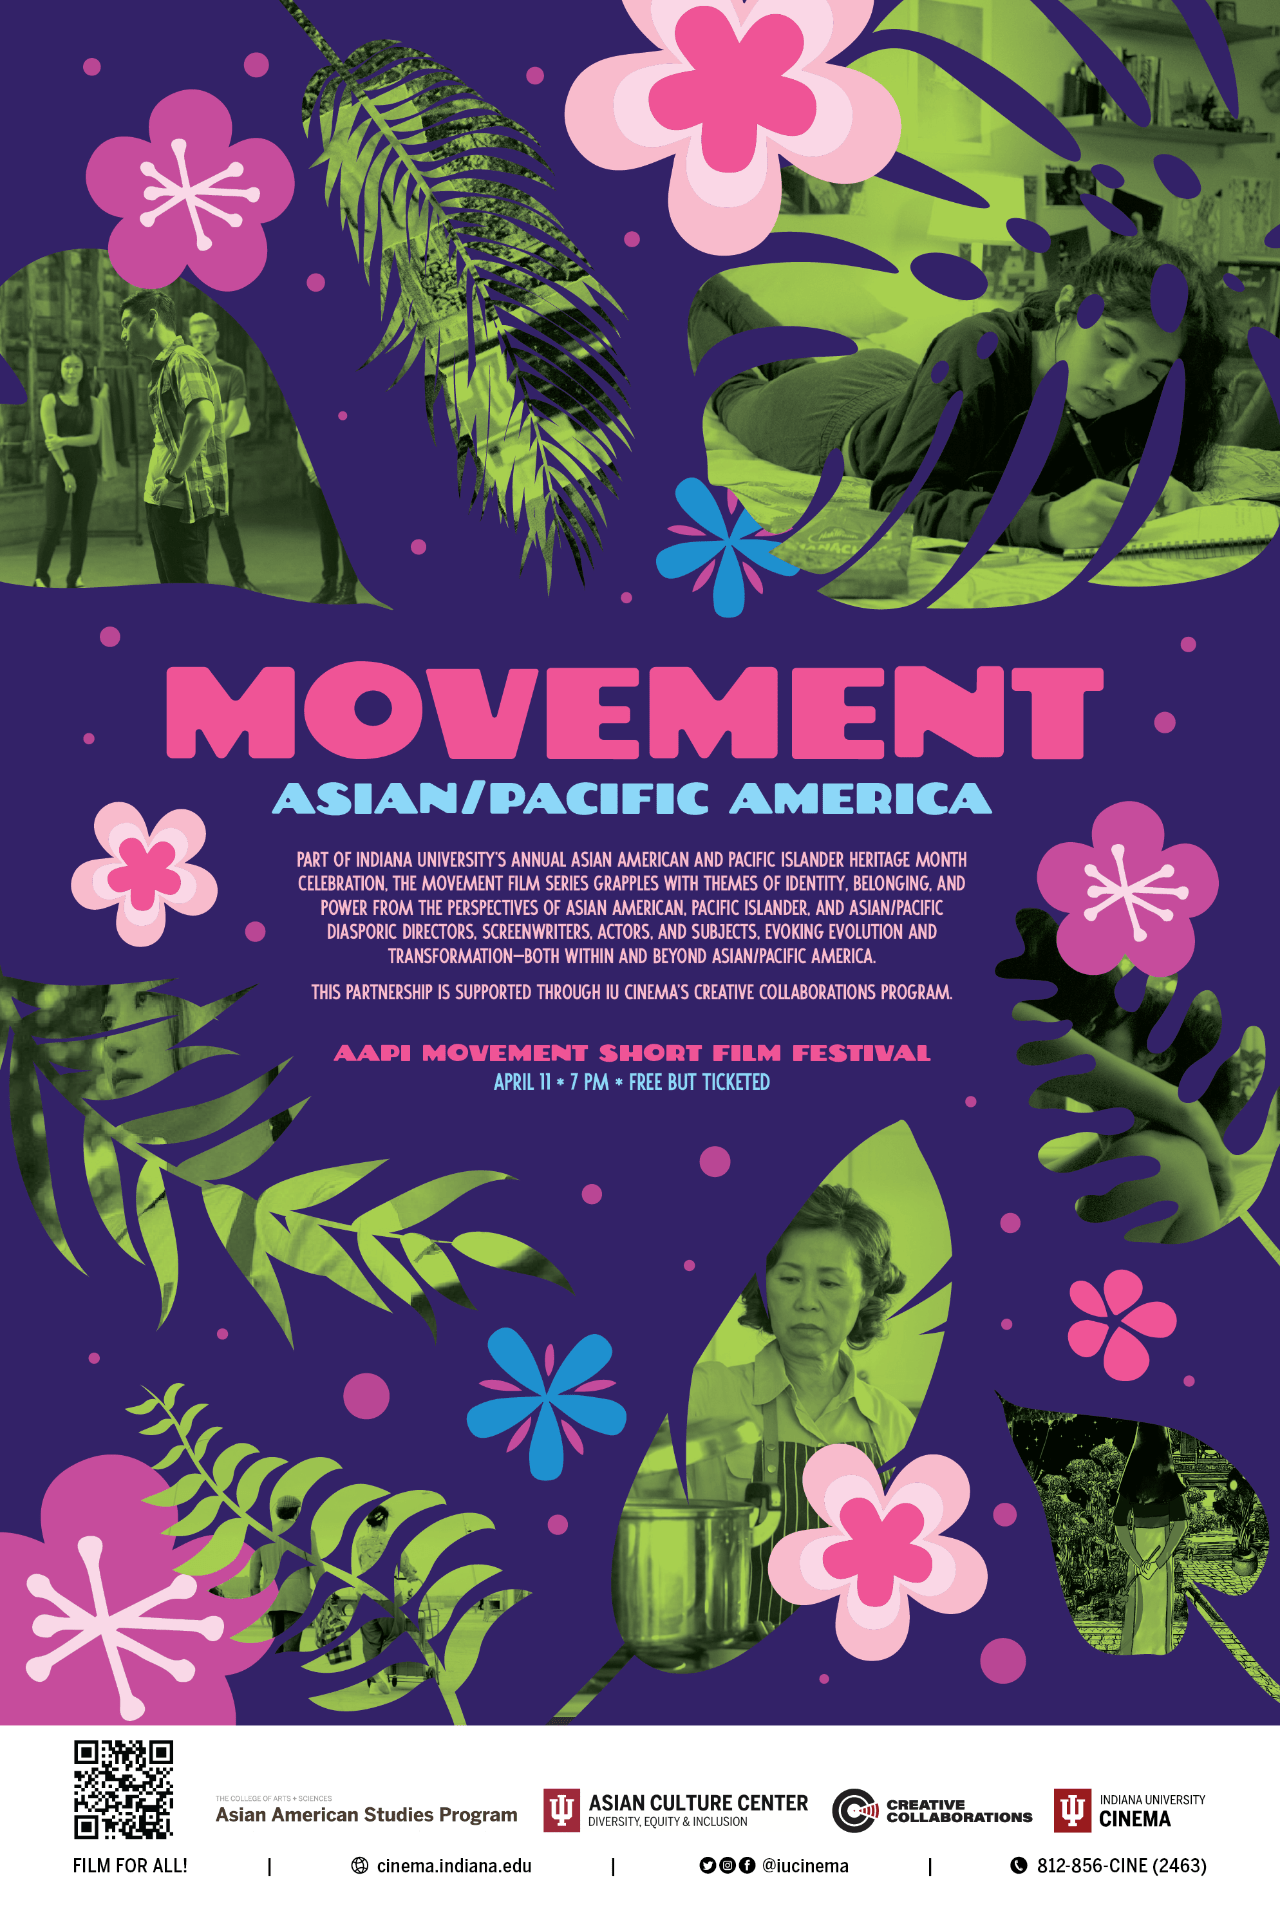 Poster for the AAPI Movement Short Film Festival